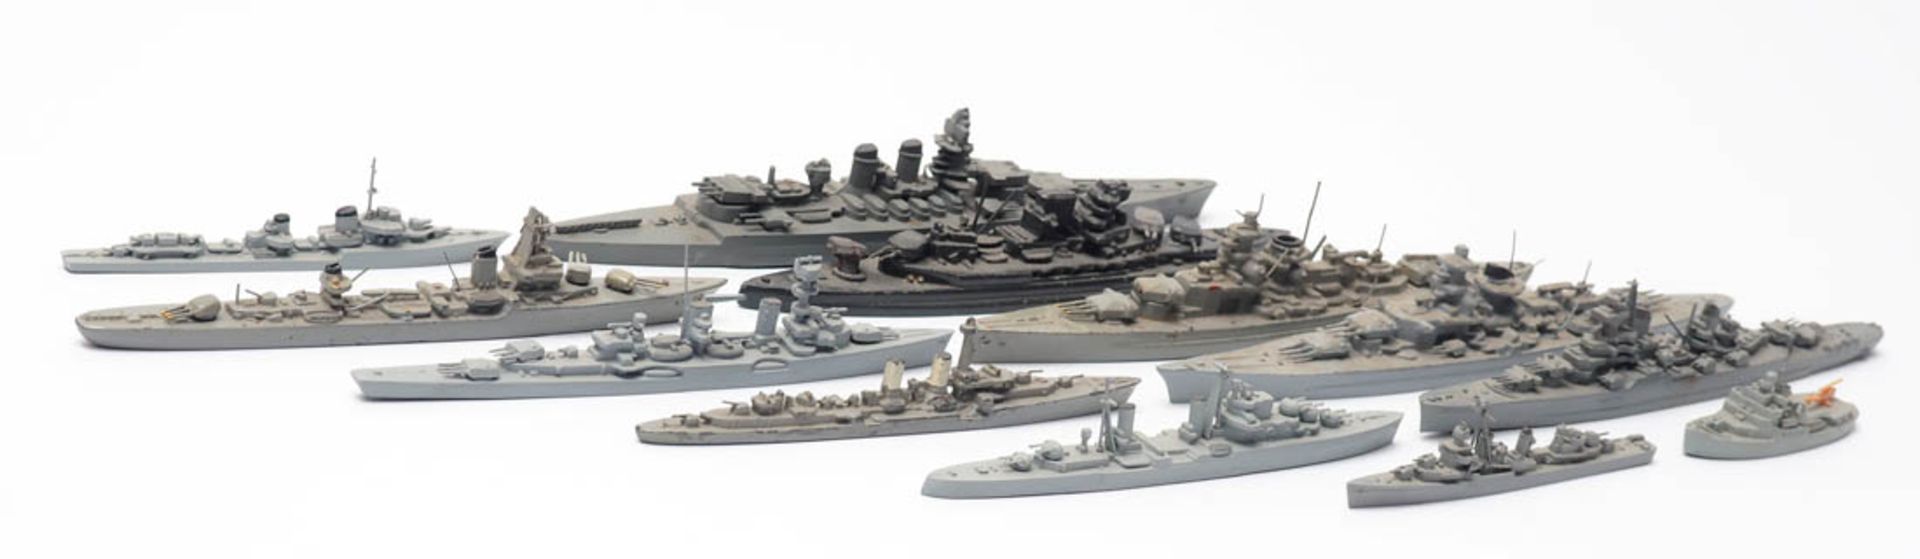 Zwölf Modelle von Kriegsschiffen, Wiking Elf aus Druckguss, eines aus Kunststoff. Unterschiedliche